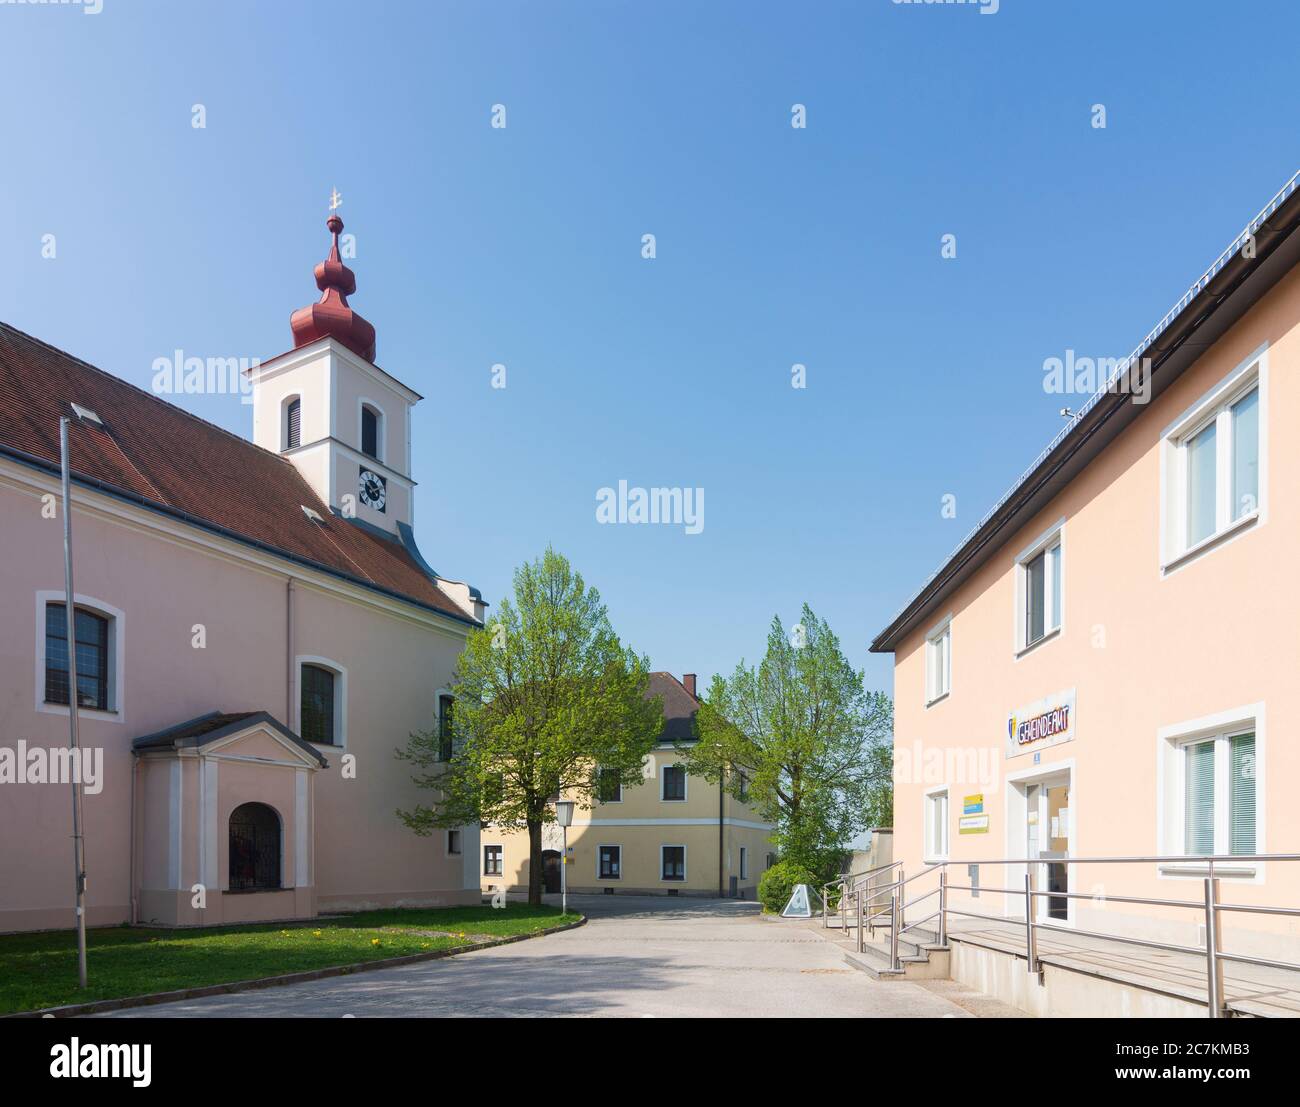 Bischofstetten, church, Mostviertel region, Niederösterreich / Lower Austria, Austria Stock Photo